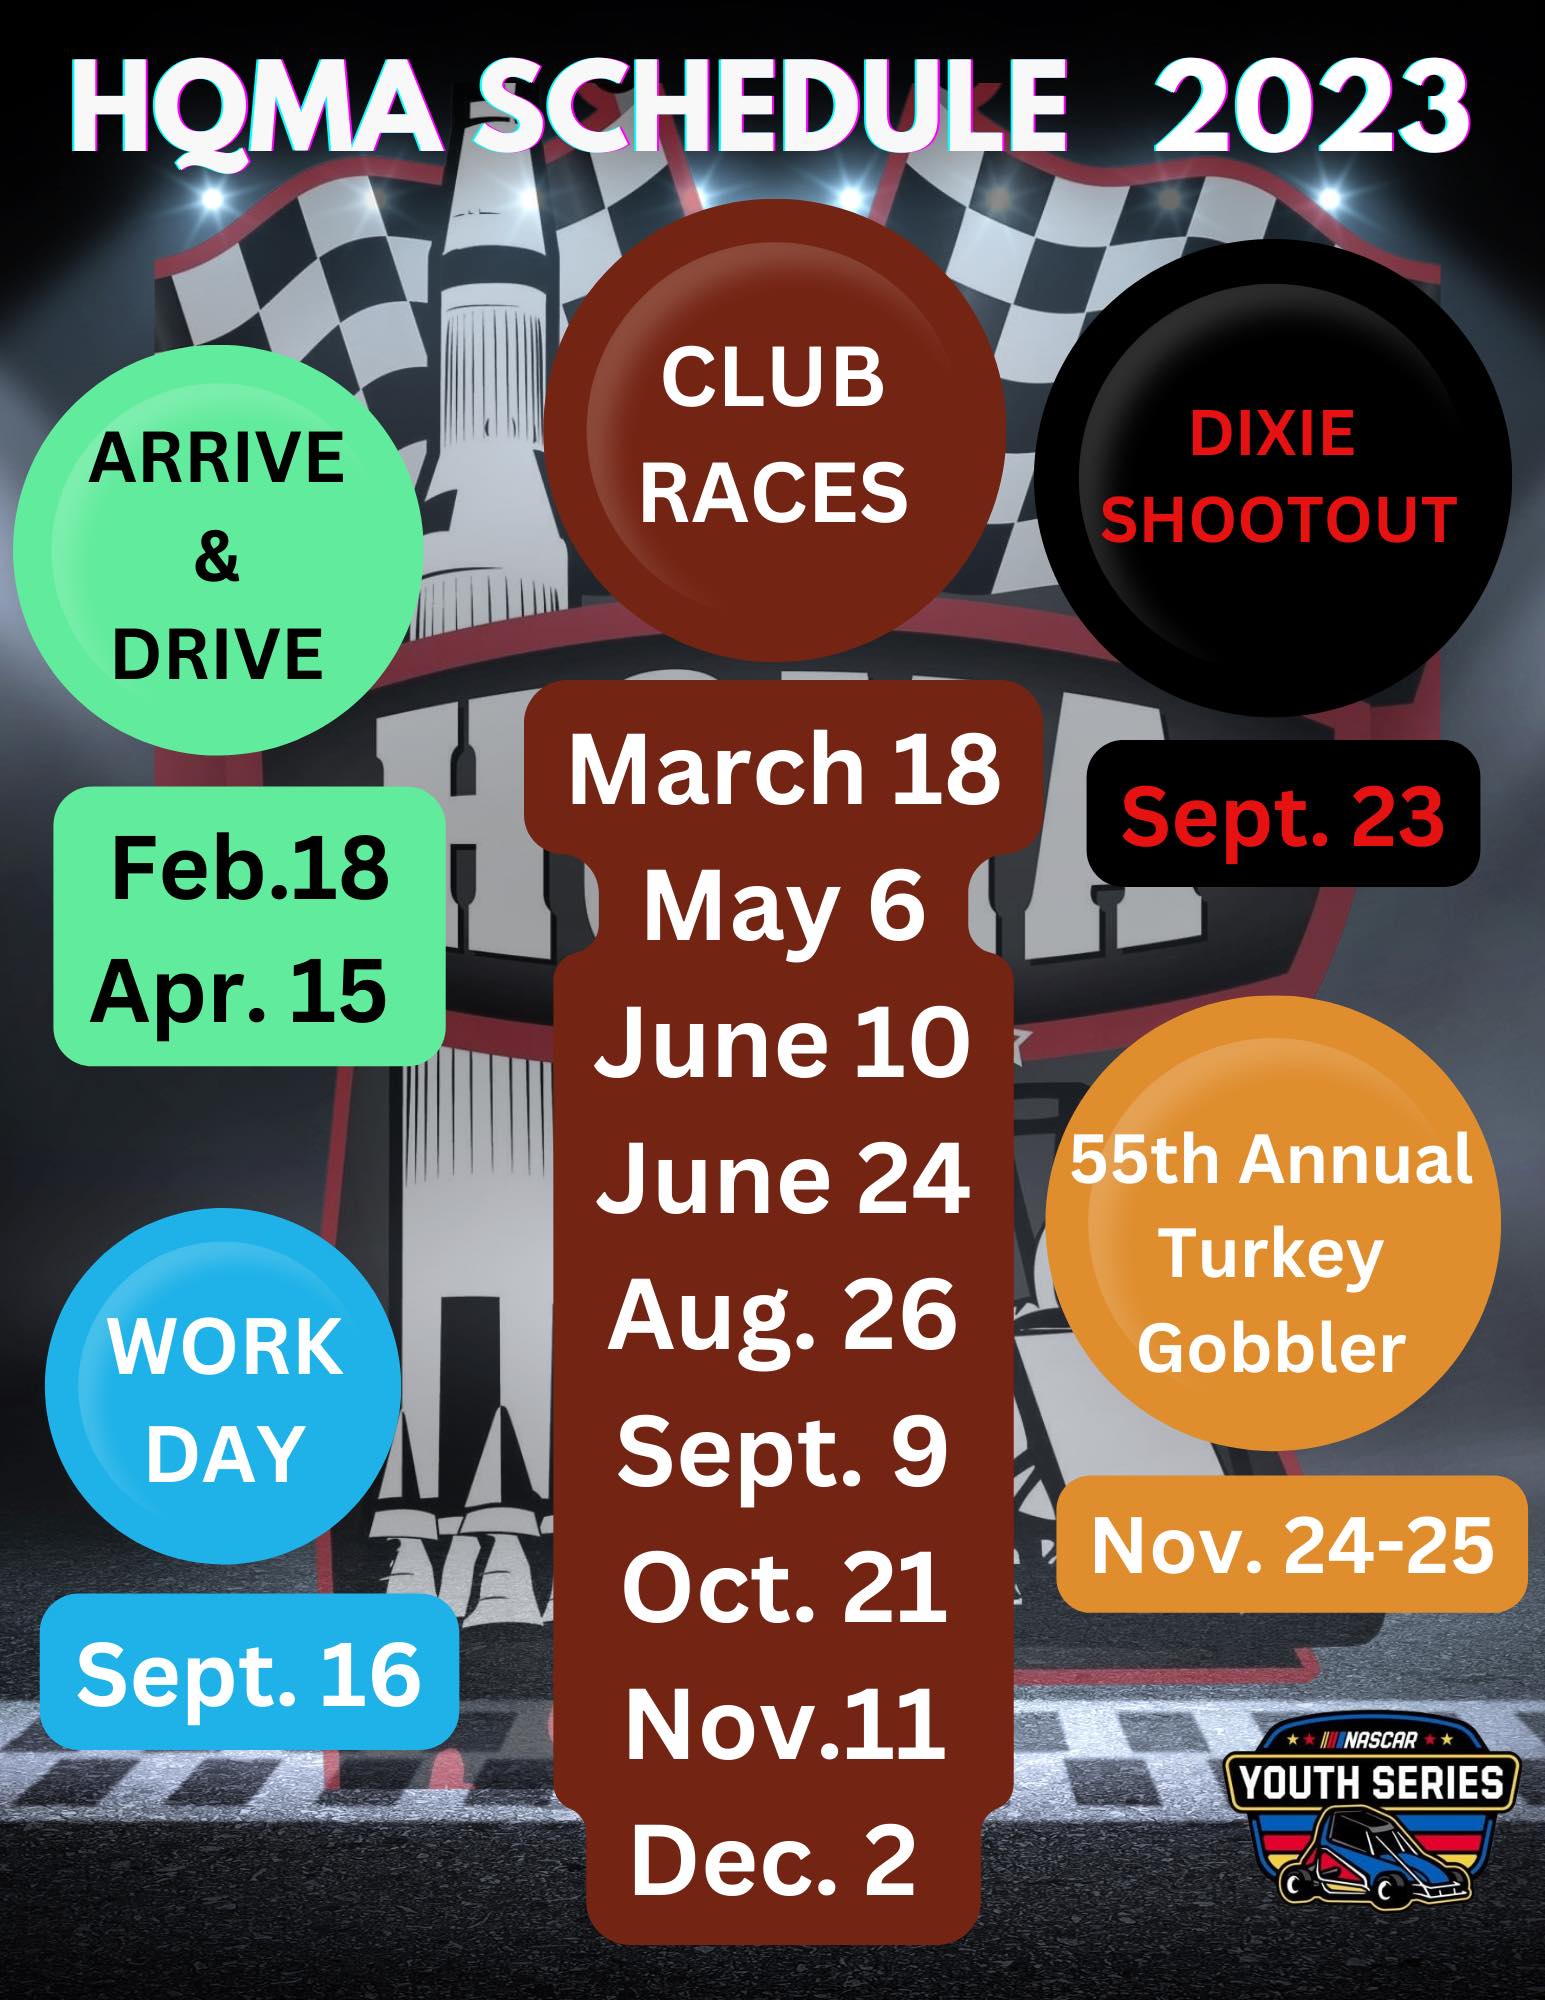 HQMA Race Schedule 2023